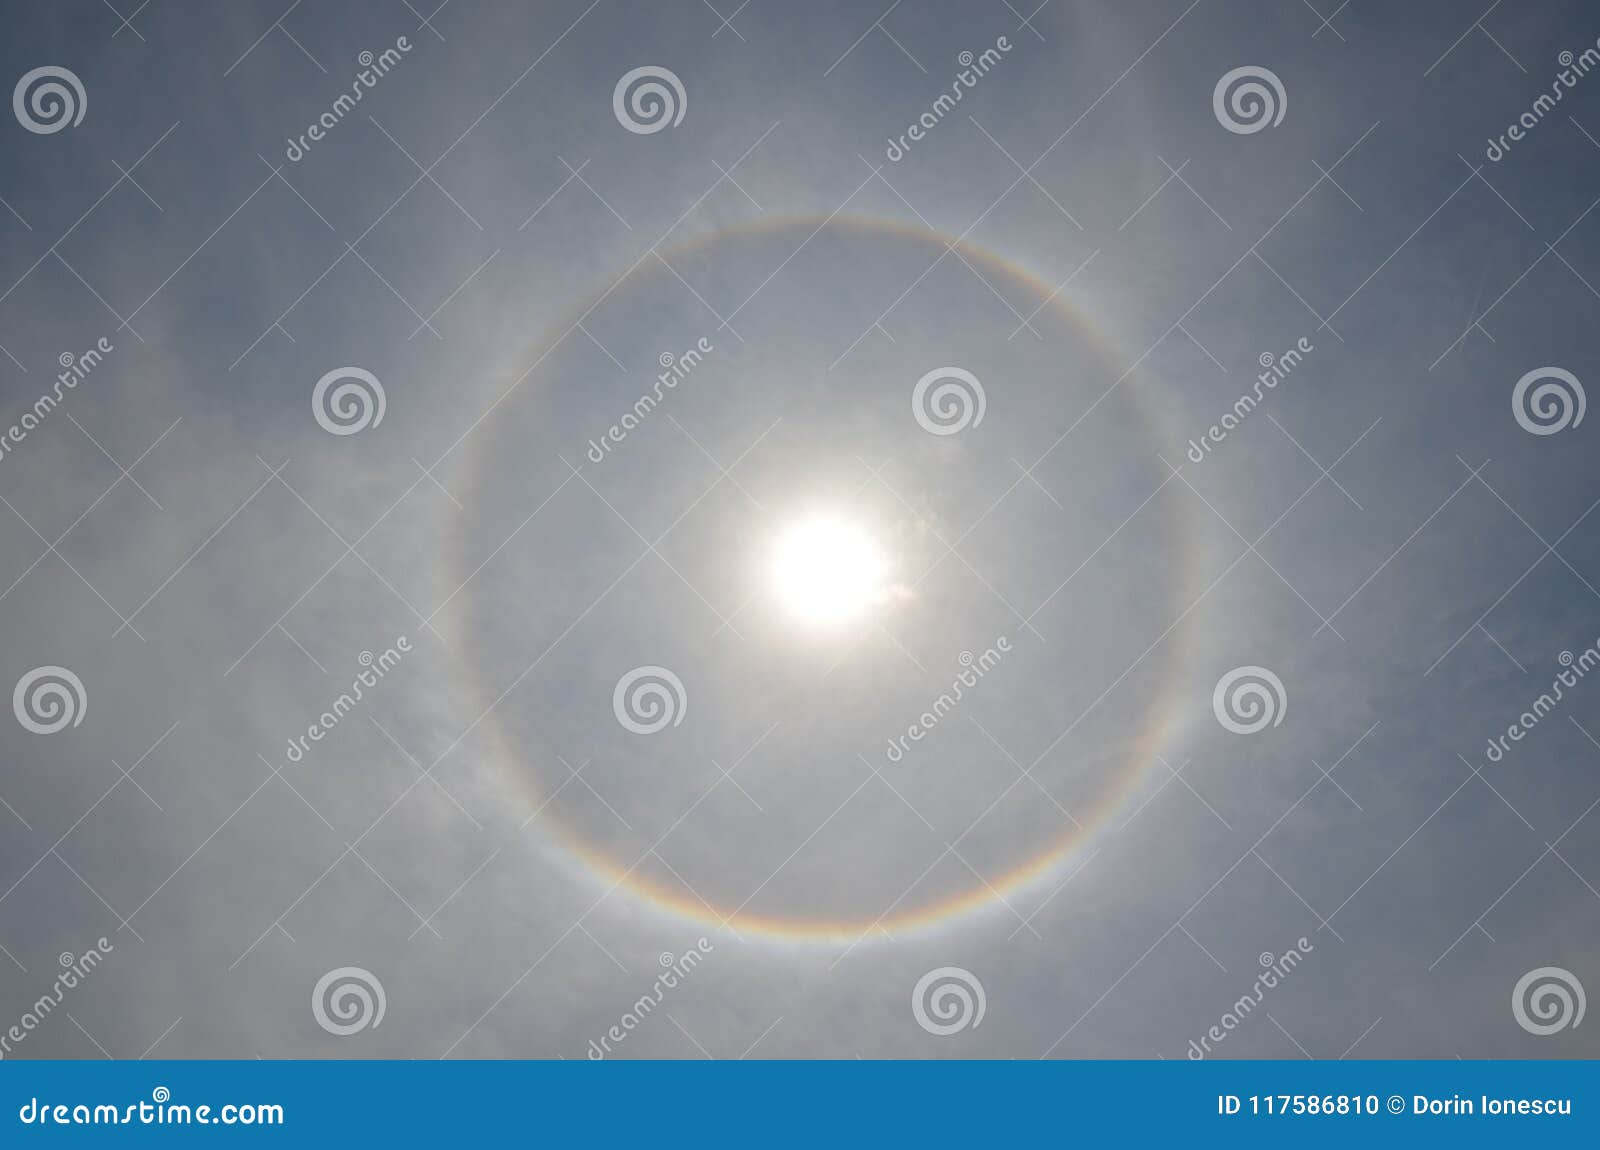 Bing image: Rainbow around the sun - Bing Wallpaper Gallery